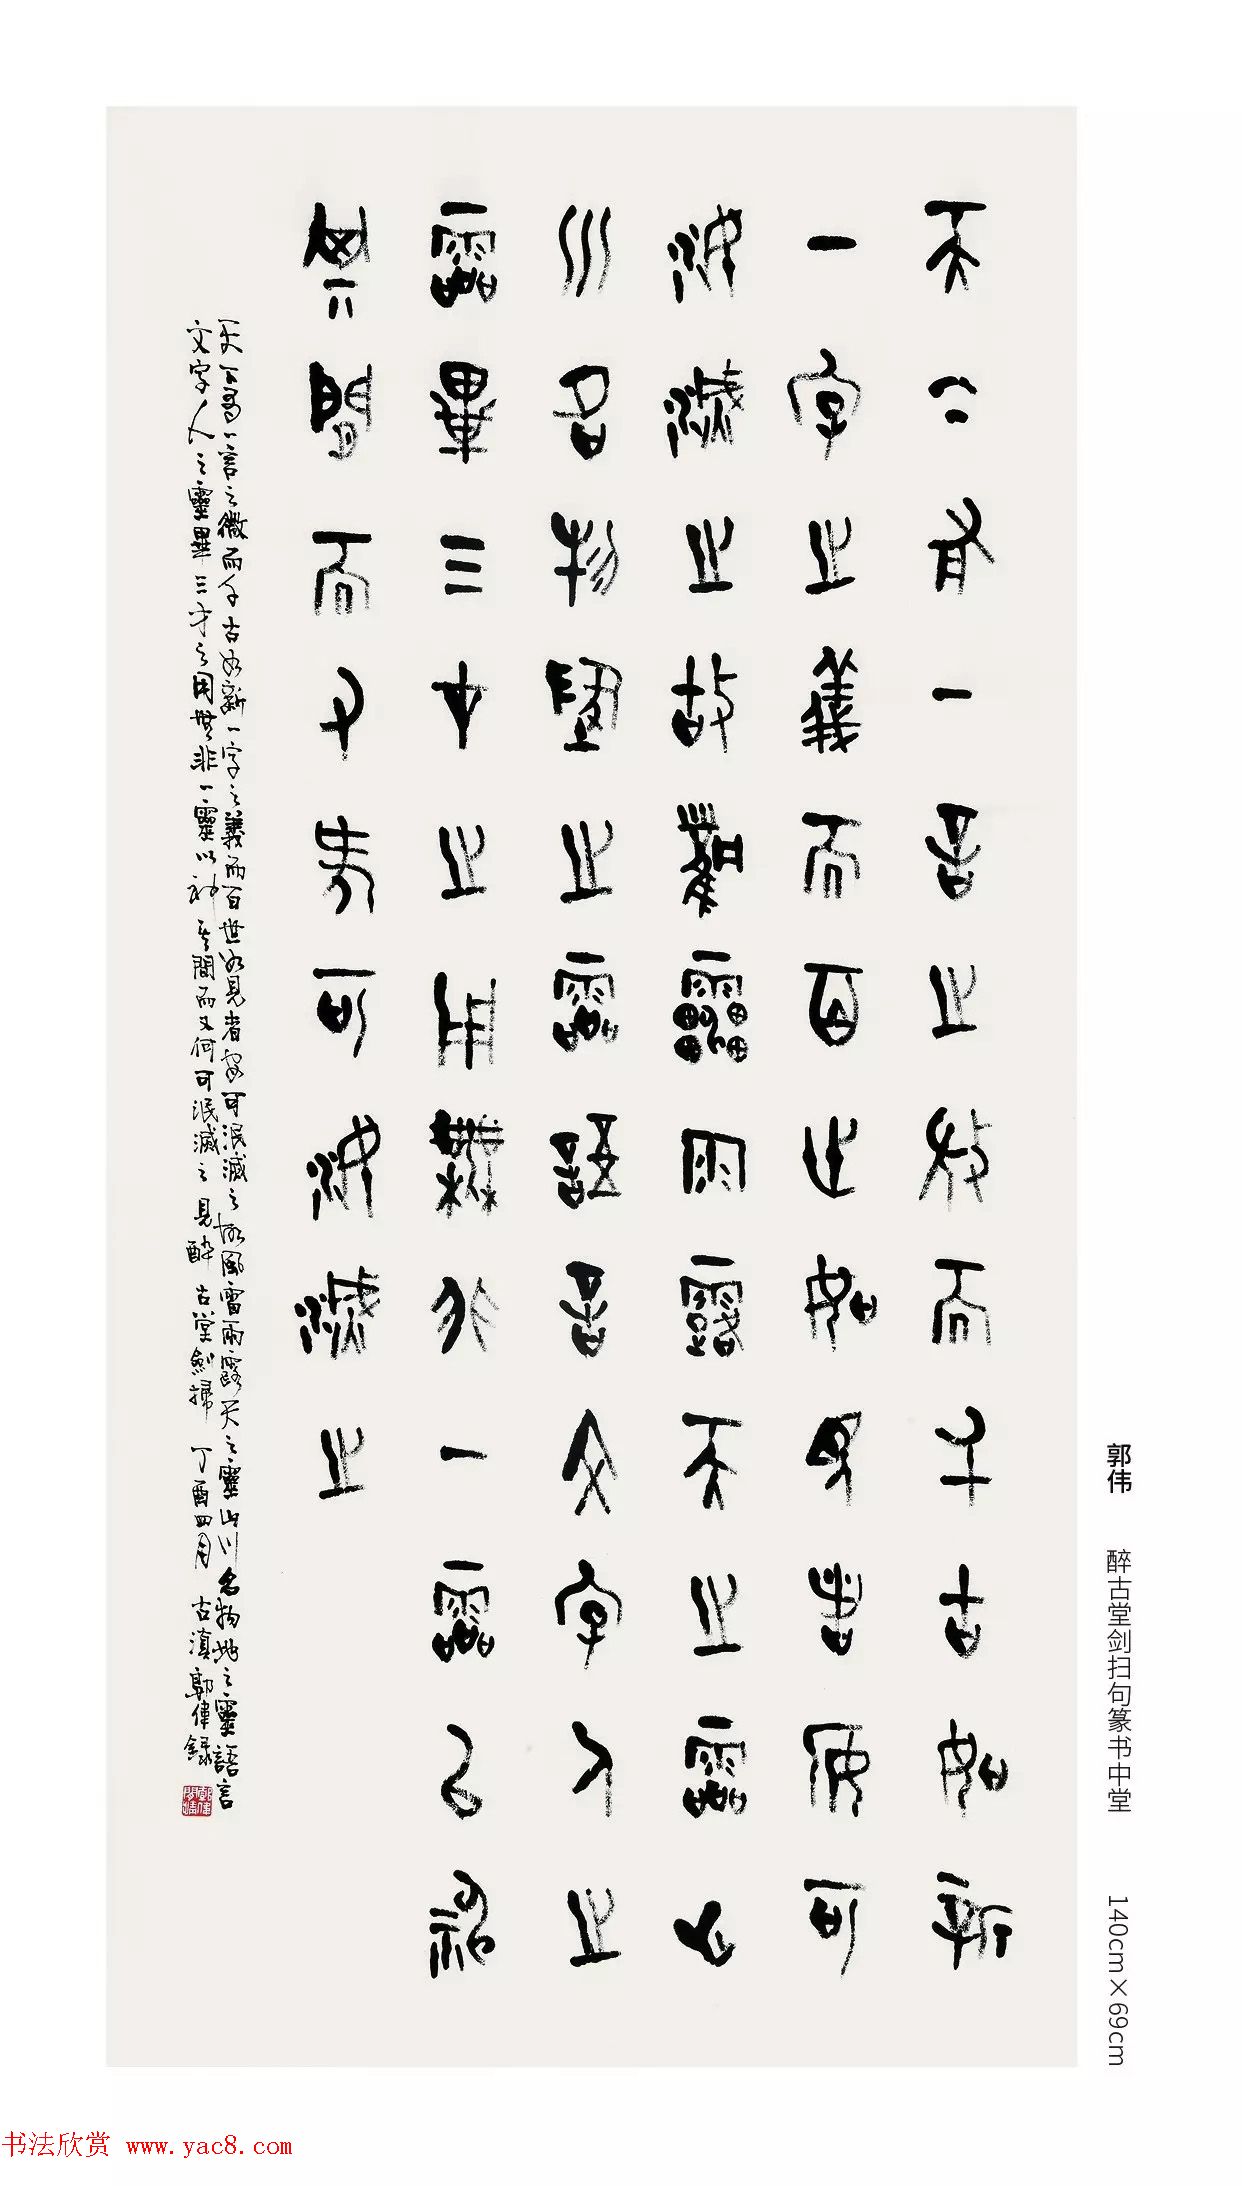 中国当代篆书优秀作品展